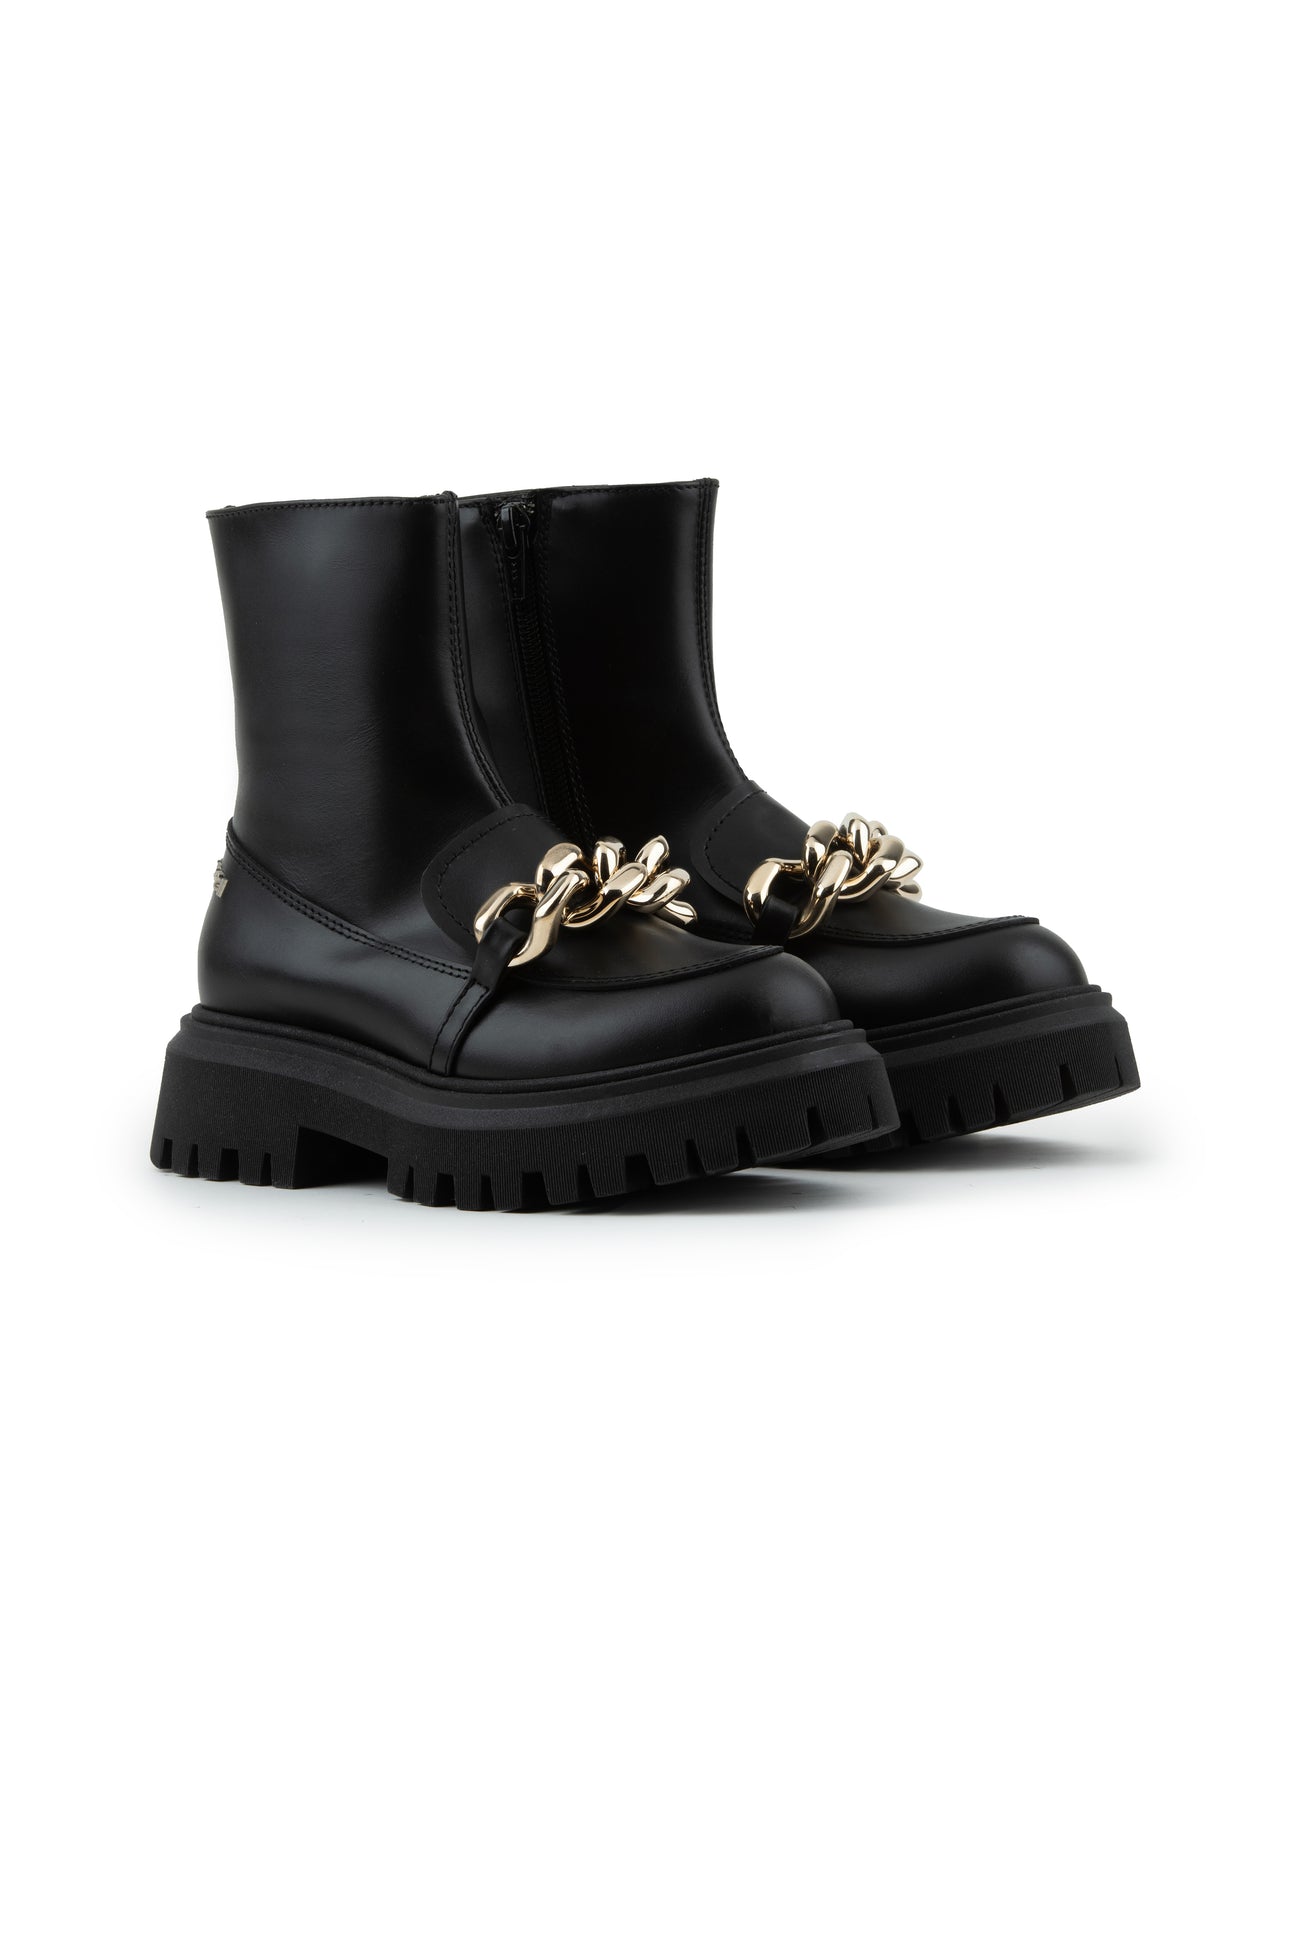 Black boots with chain Black boots with chain